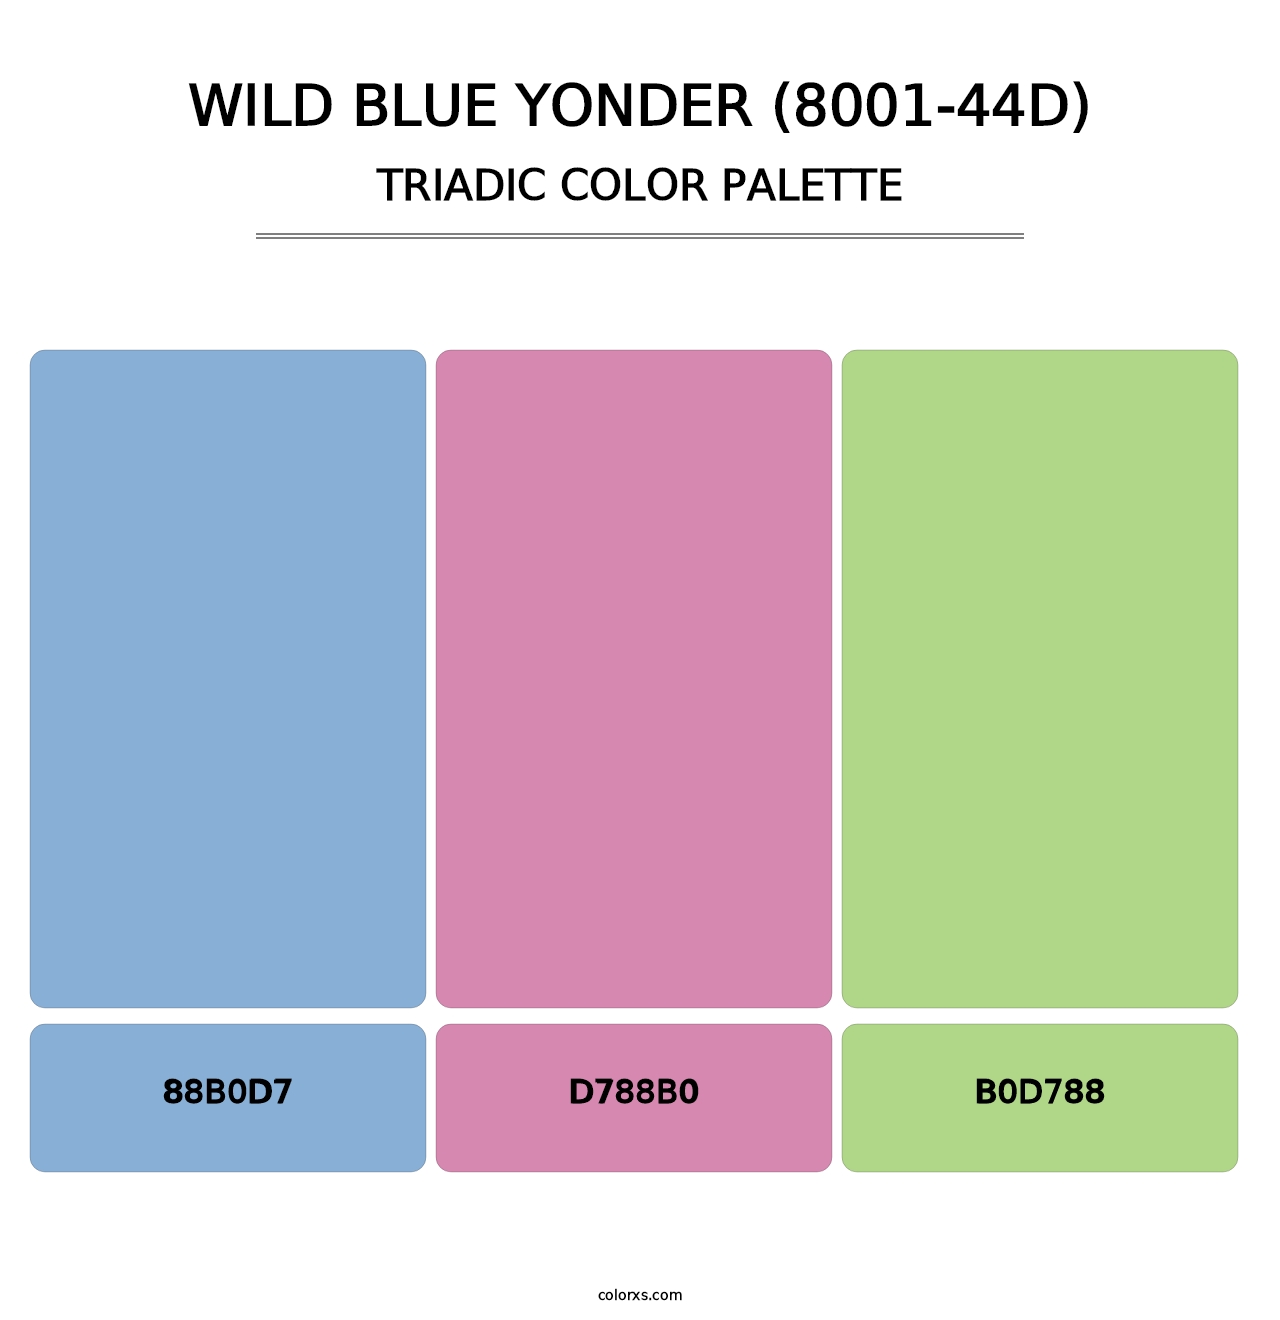 Wild Blue Yonder (8001-44D) - Triadic Color Palette